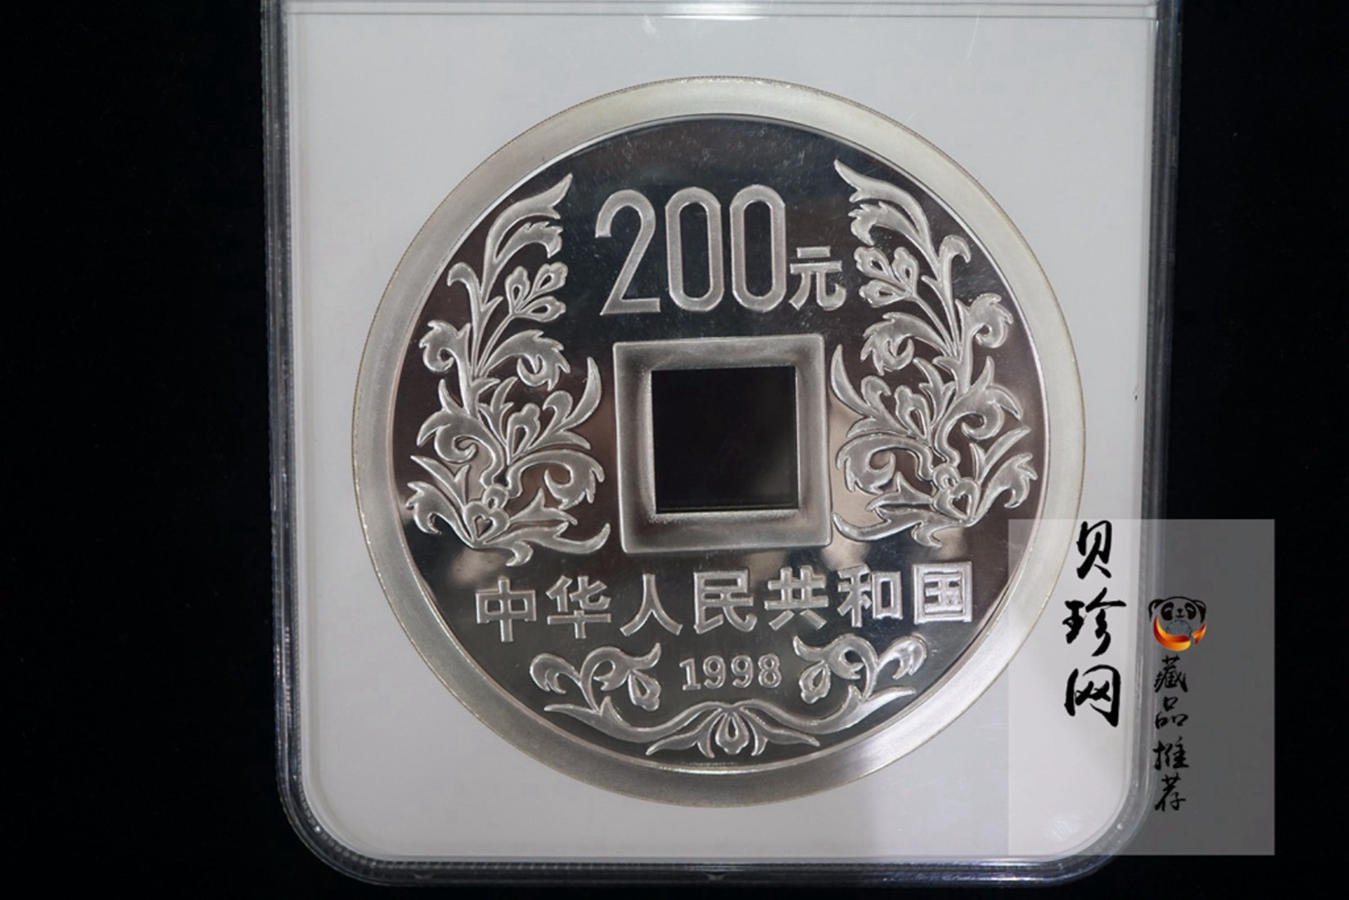 【981503】1998年大唐镇库金钱金银纪念币1公斤精制银币